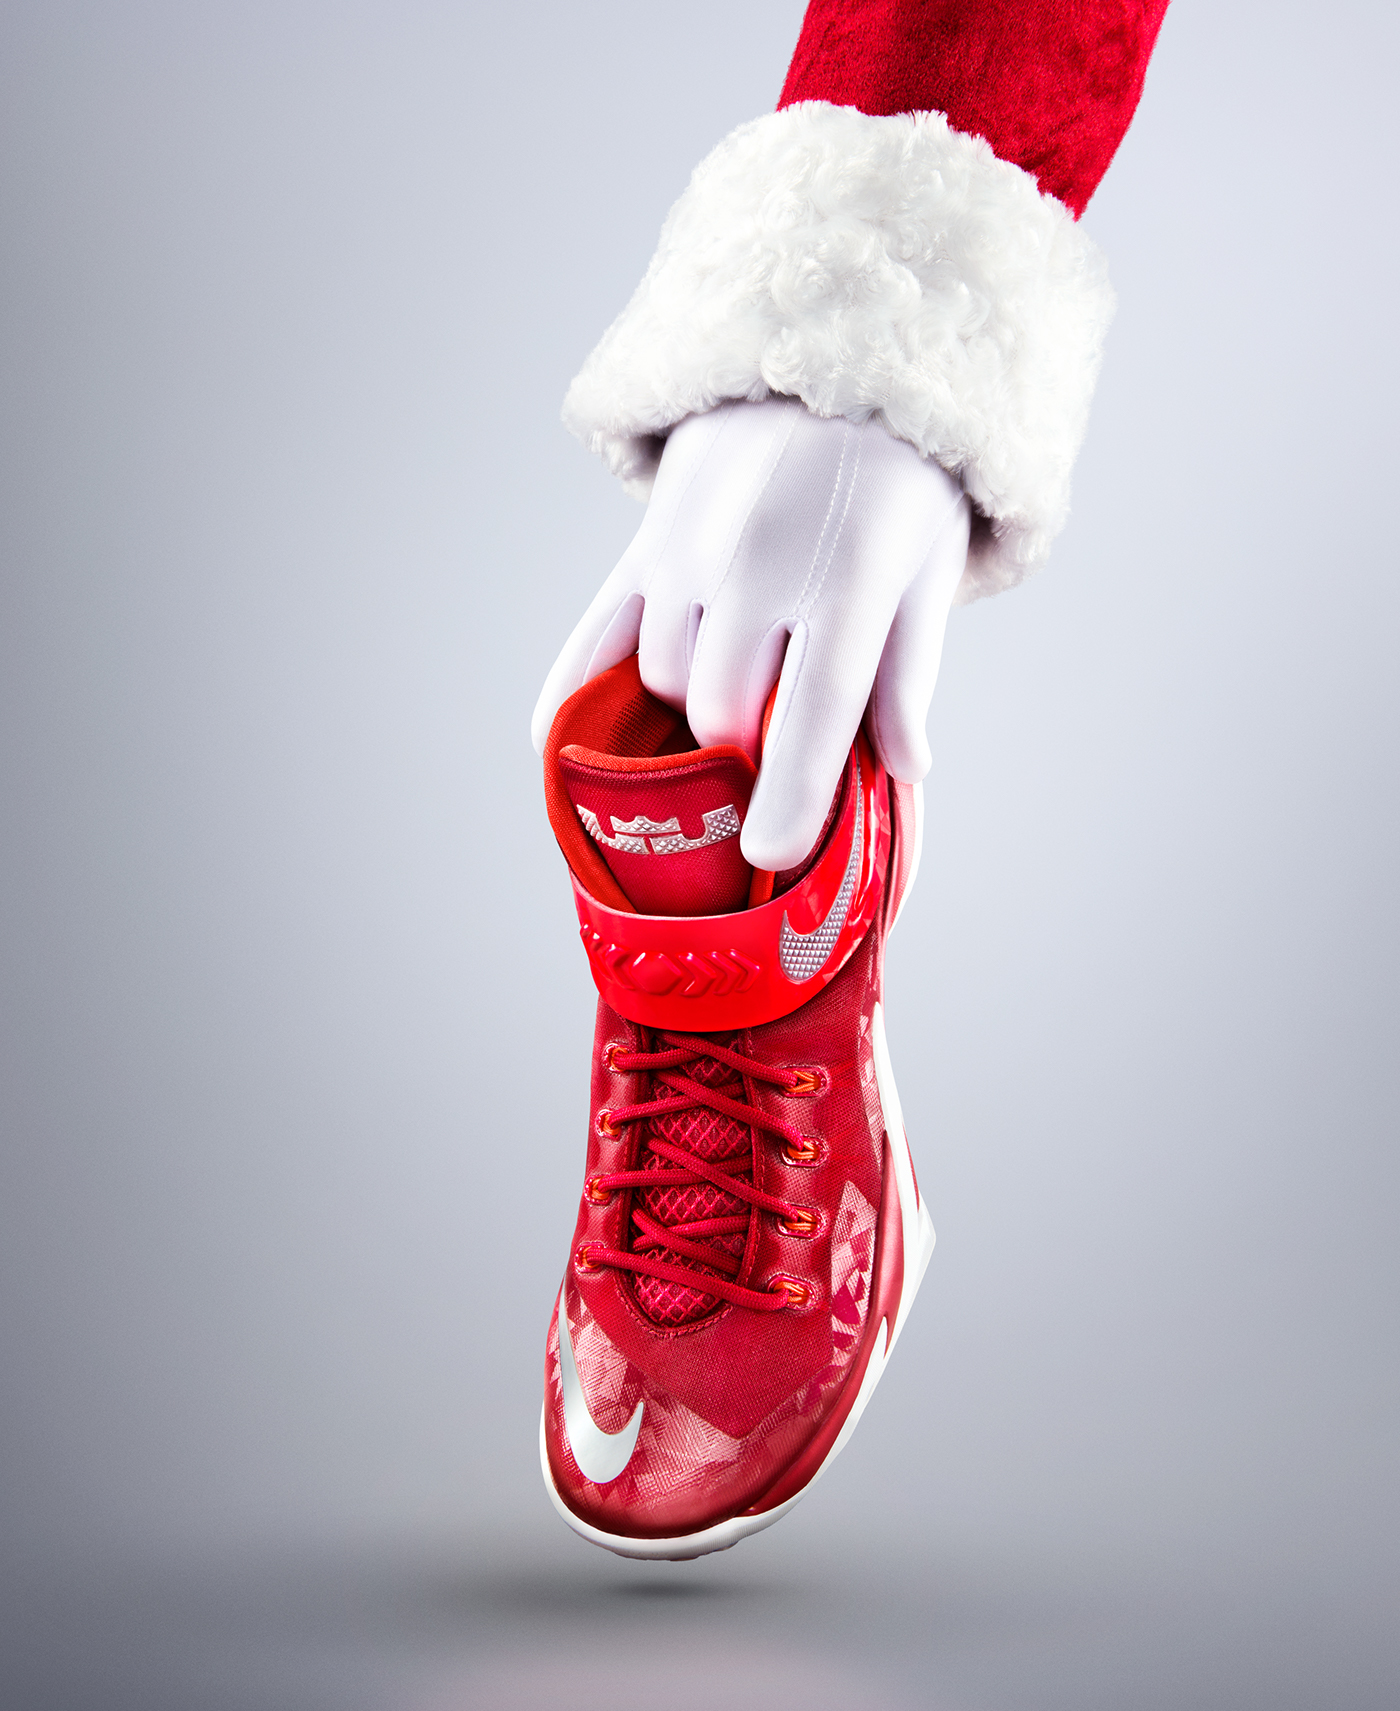 Nike Christmas On" on